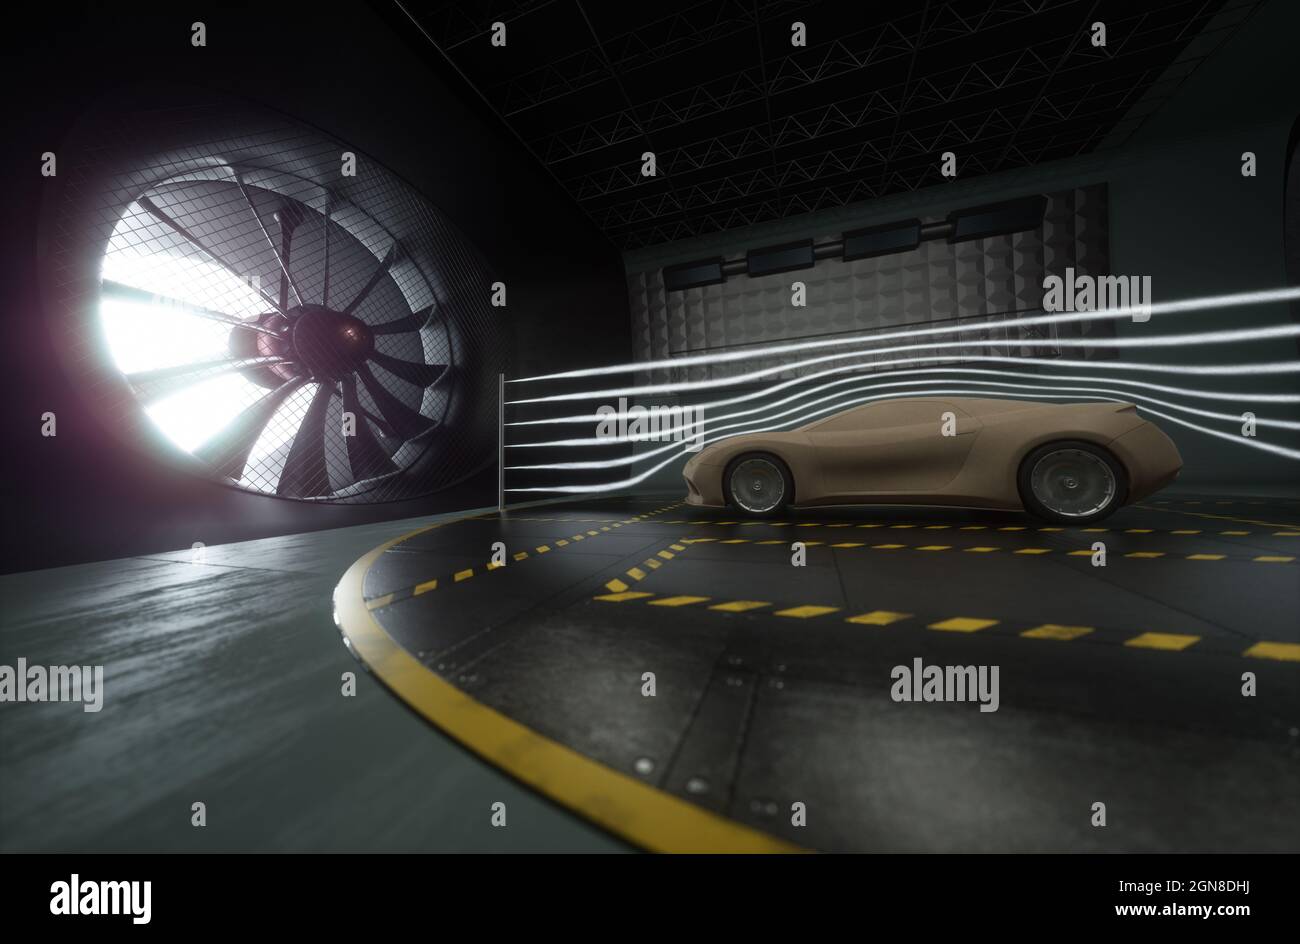 3D Ilustración de un deportivo imaginario. Prototipo conceptual dentro del túnel aerodinámico. Foto de stock